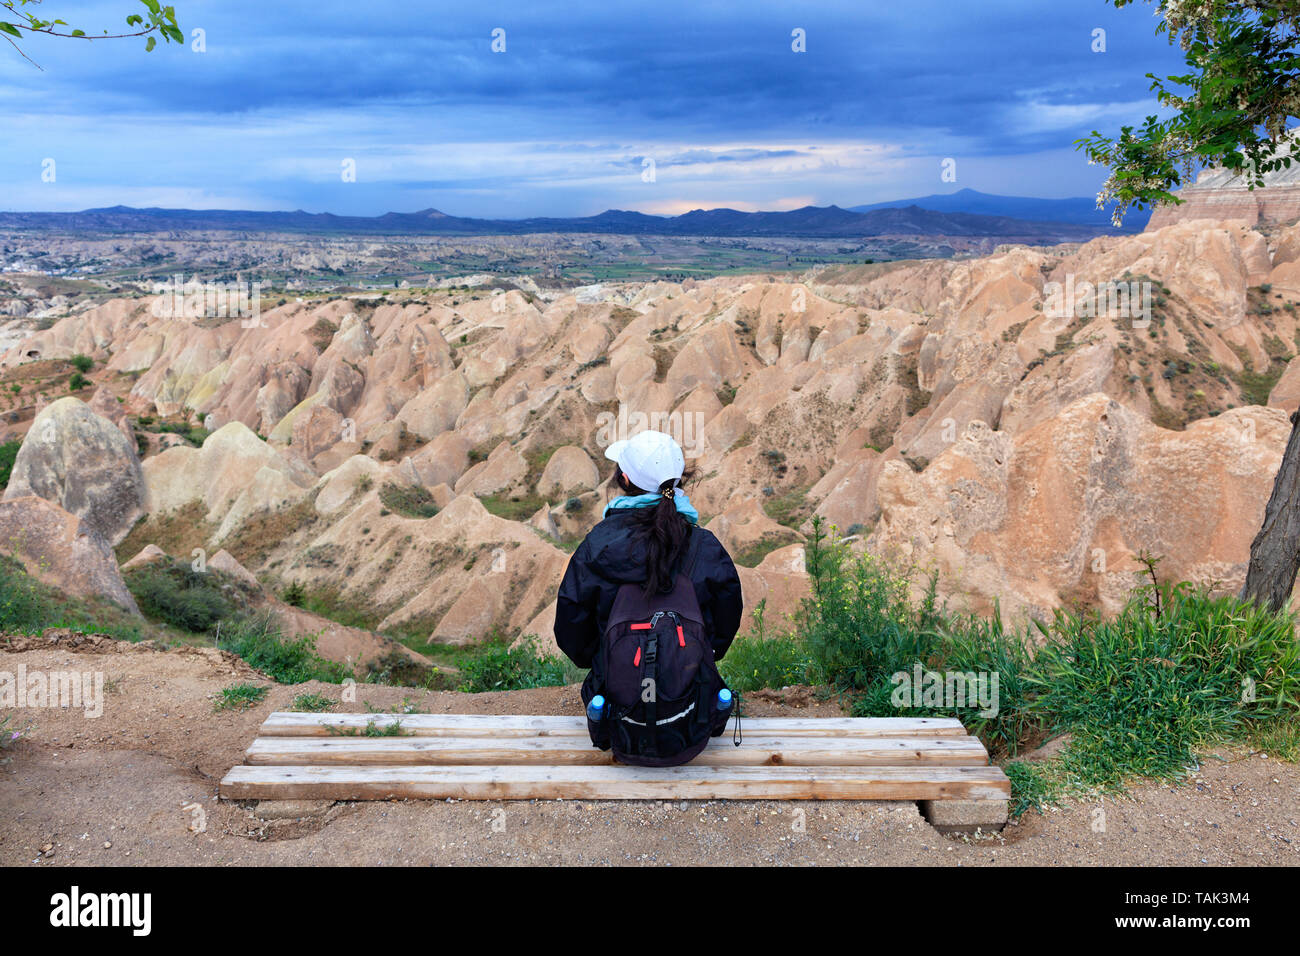 Une jeune fille avec un sac à dos de touriste est assis sur un banc en bois et regarde les montagnes, ravins et un ciel d'orage. Banque D'Images